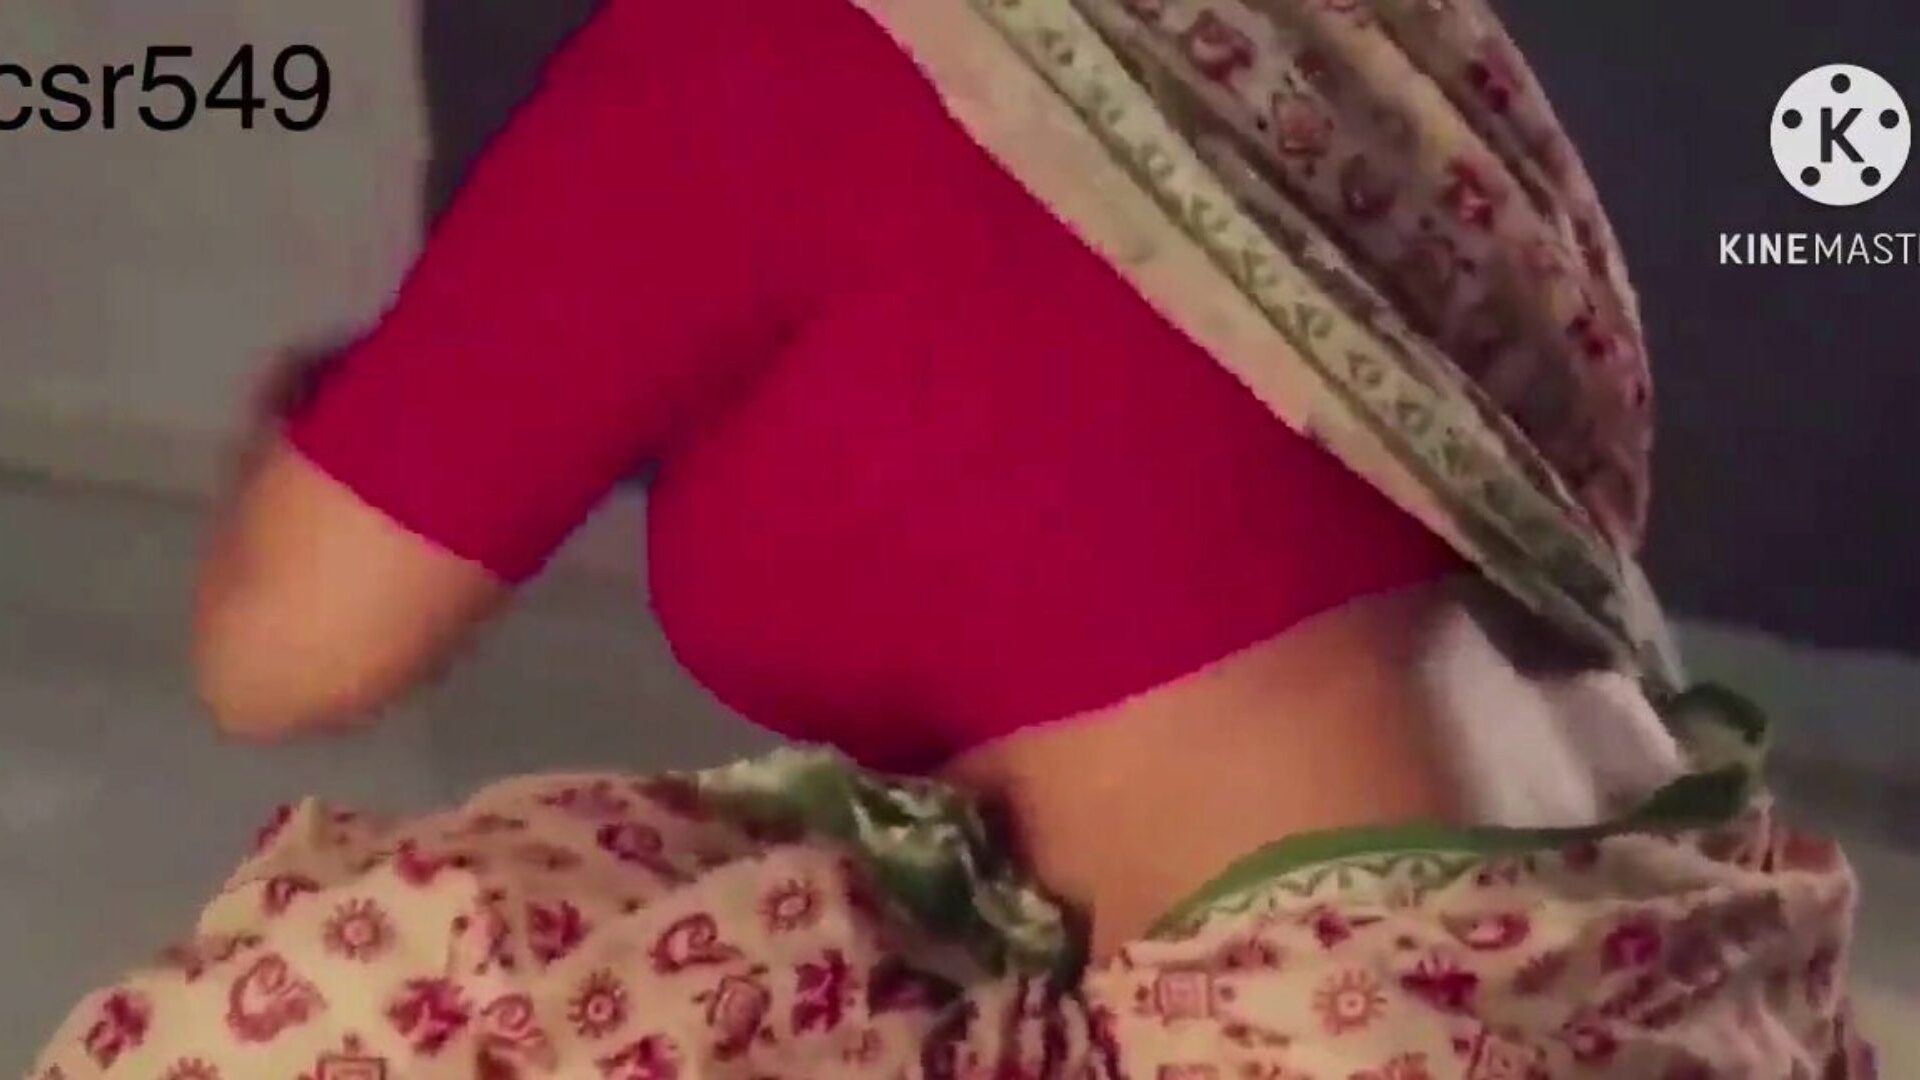 desi seksi n sočne crvene saree žene koje jebu ... gledaj desi seksi i sočne žene u crvenoj saree kako se jebe sluga film na xhamster - ultimativna baza besplatnih azijskih indijskih hd porno videa